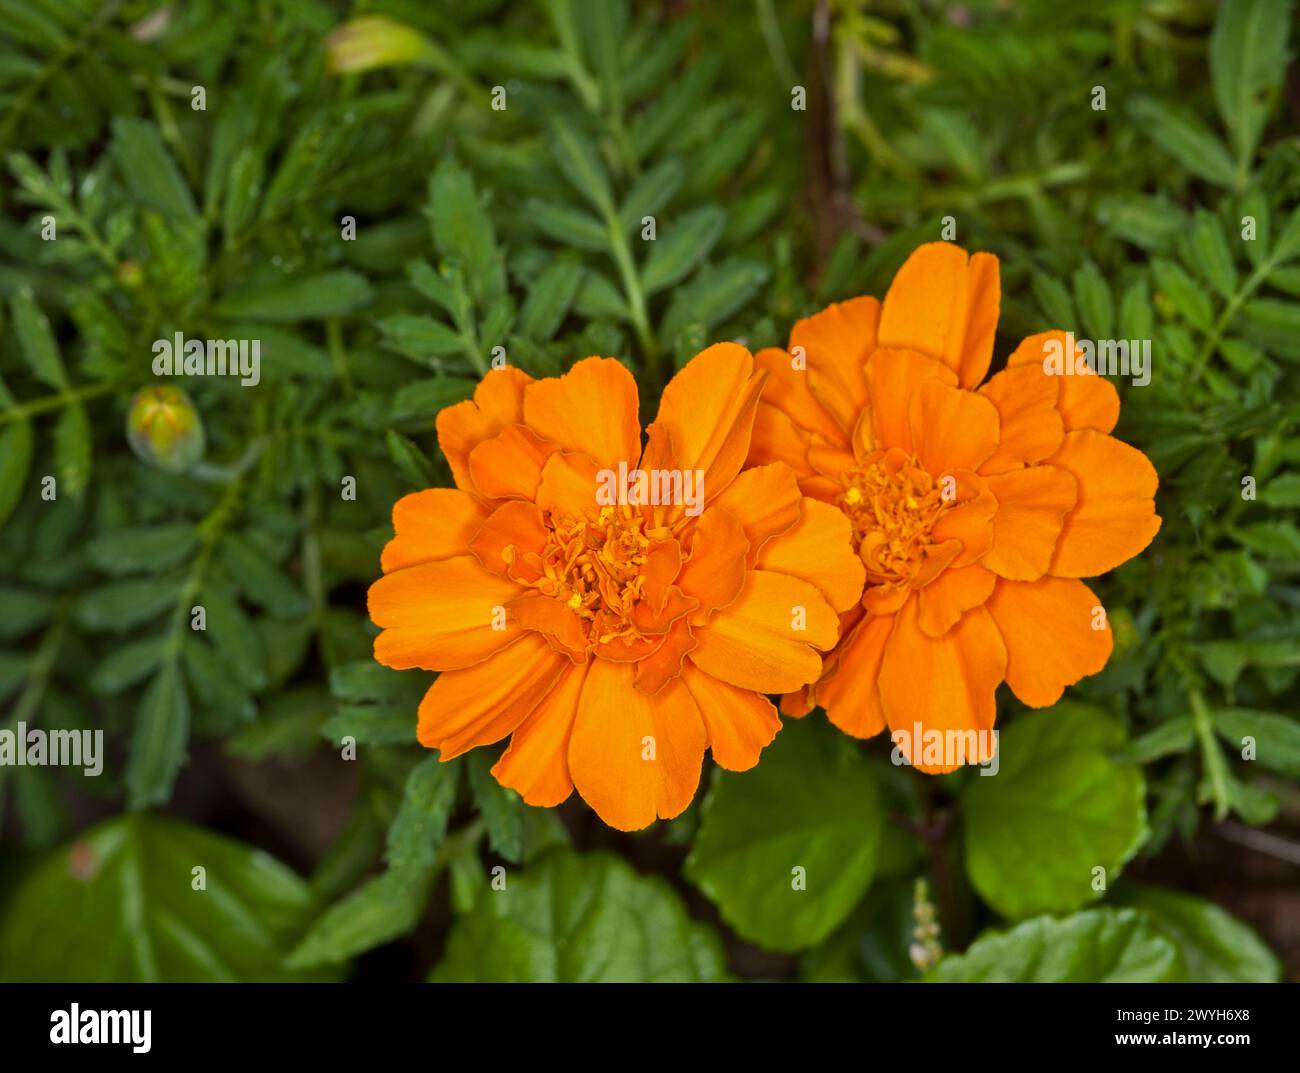 Fleurs orange dorées vives de Marigolds français, Tagetes patula, une plante de jardin annuelle, sur un fond de feuilles vertes dans un jardin Banque D'Images